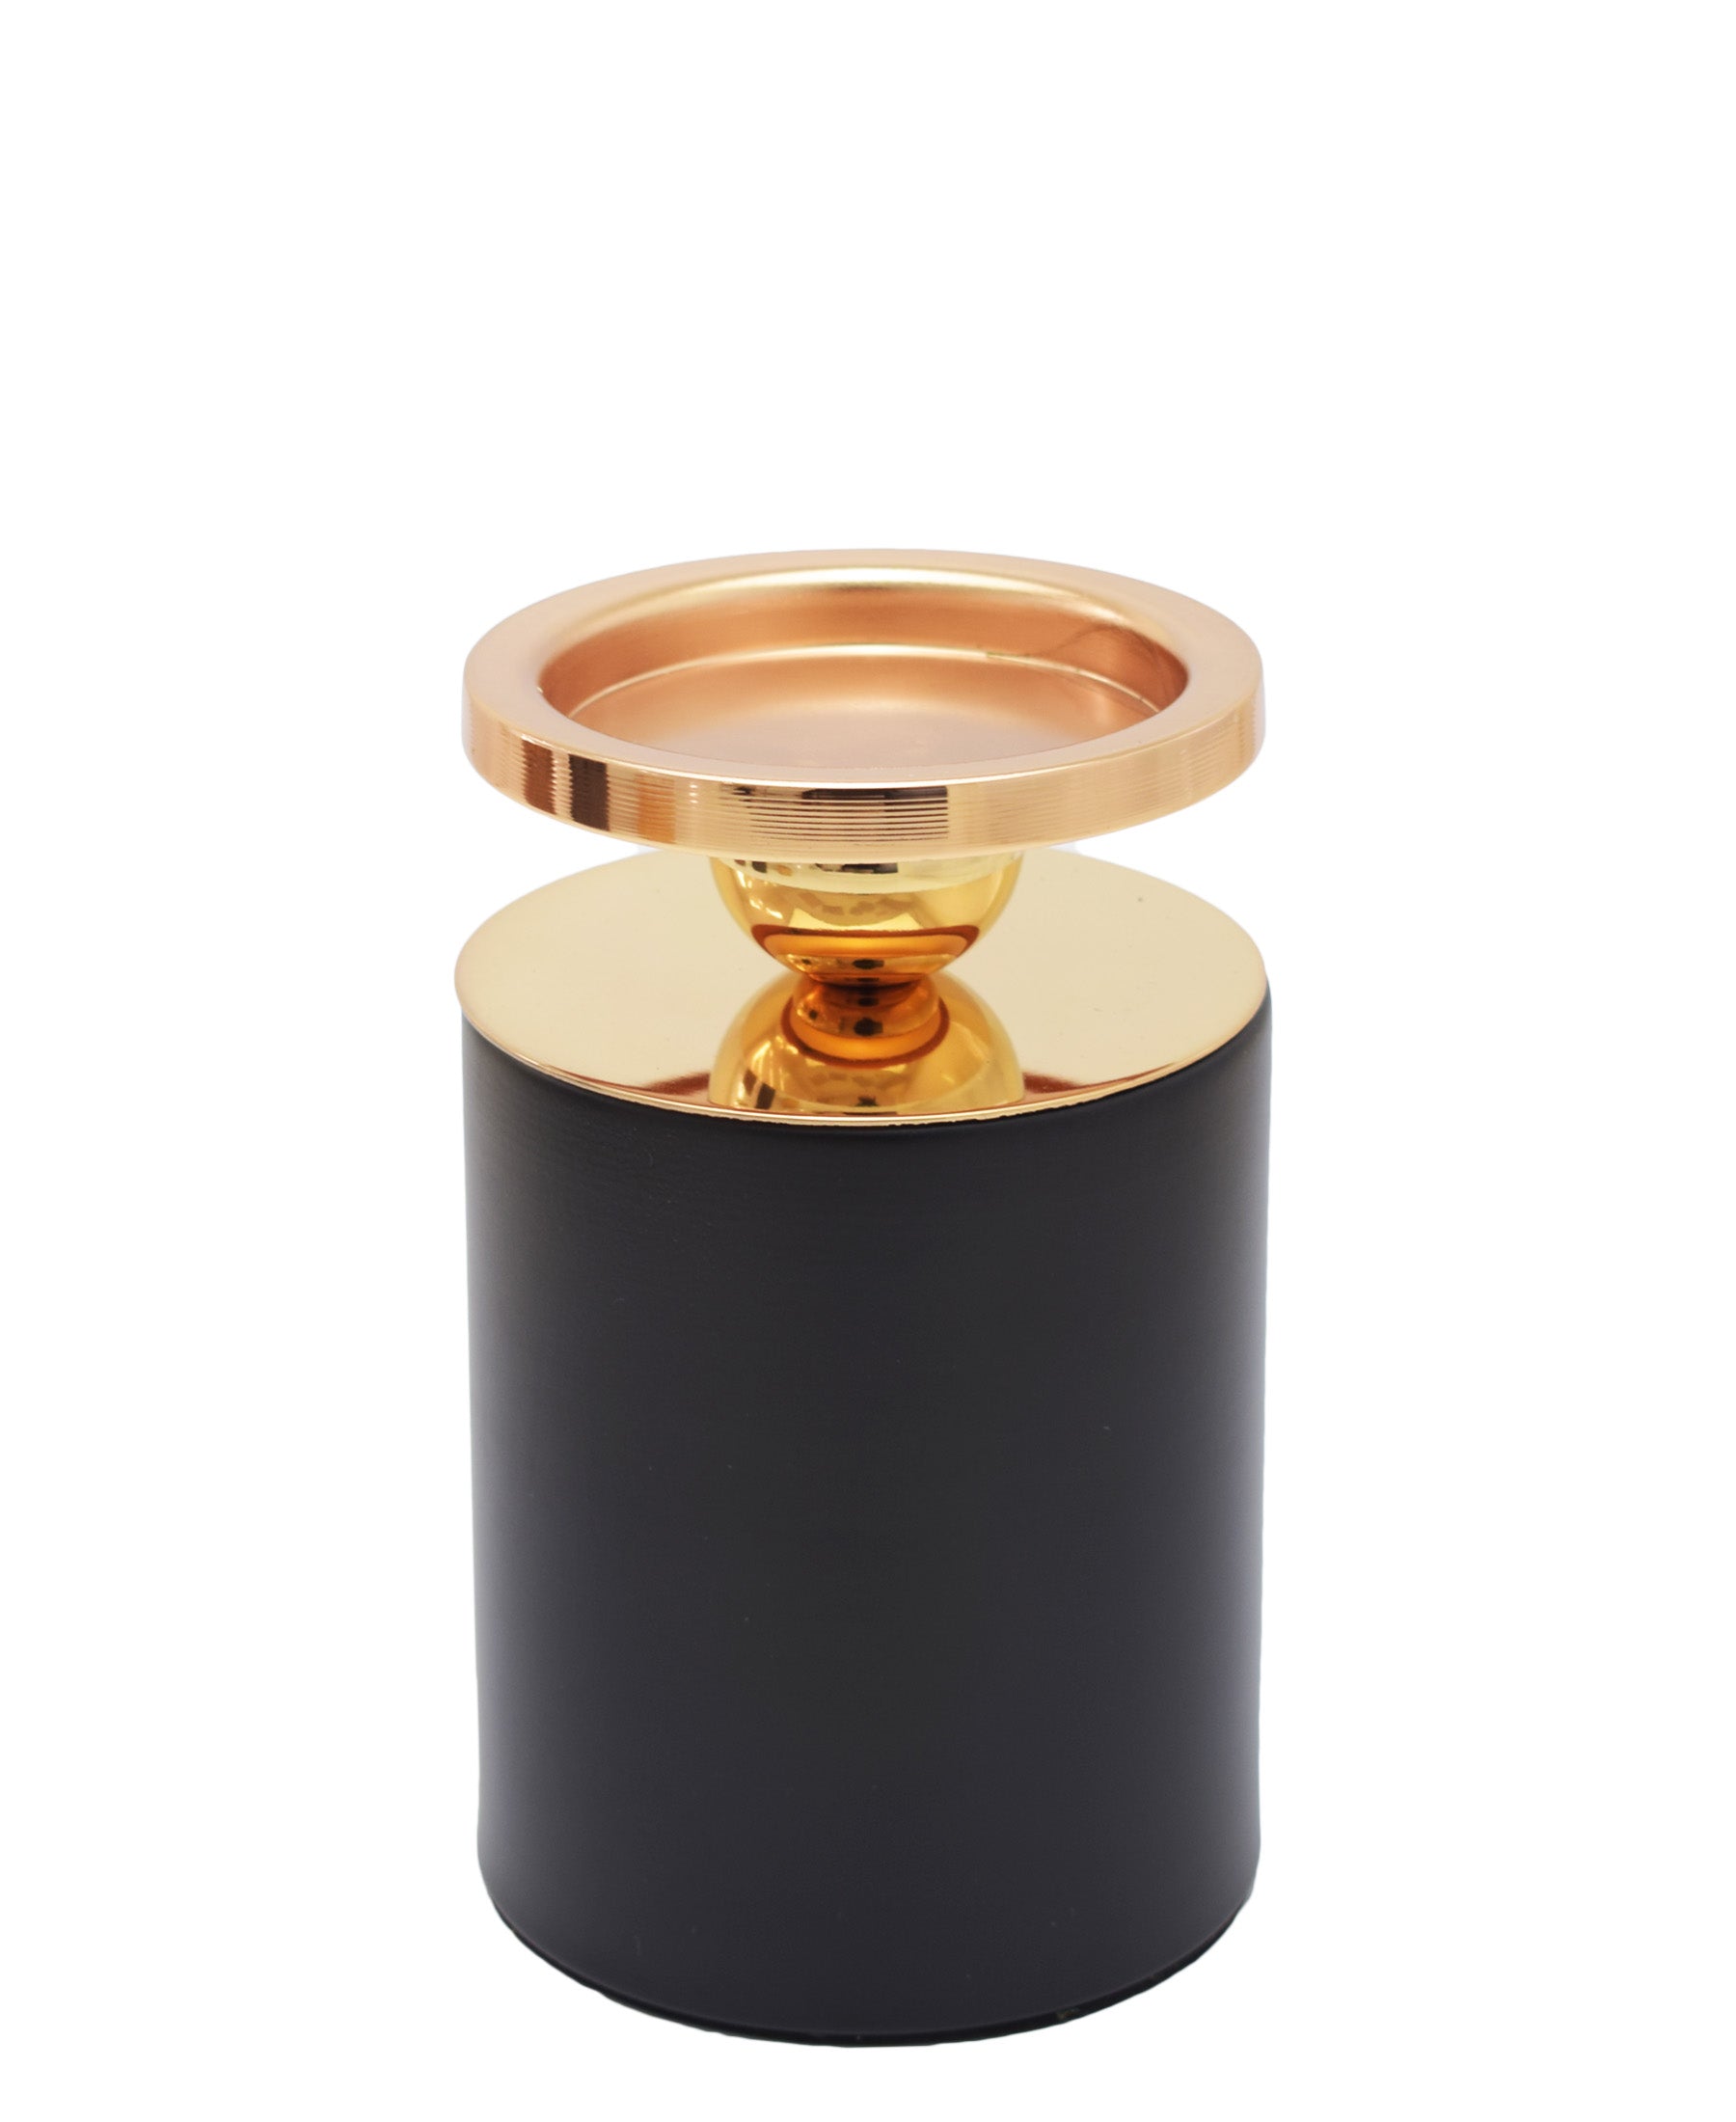 Urban Decor Mende Candle Holder 17cm - Black & Gold